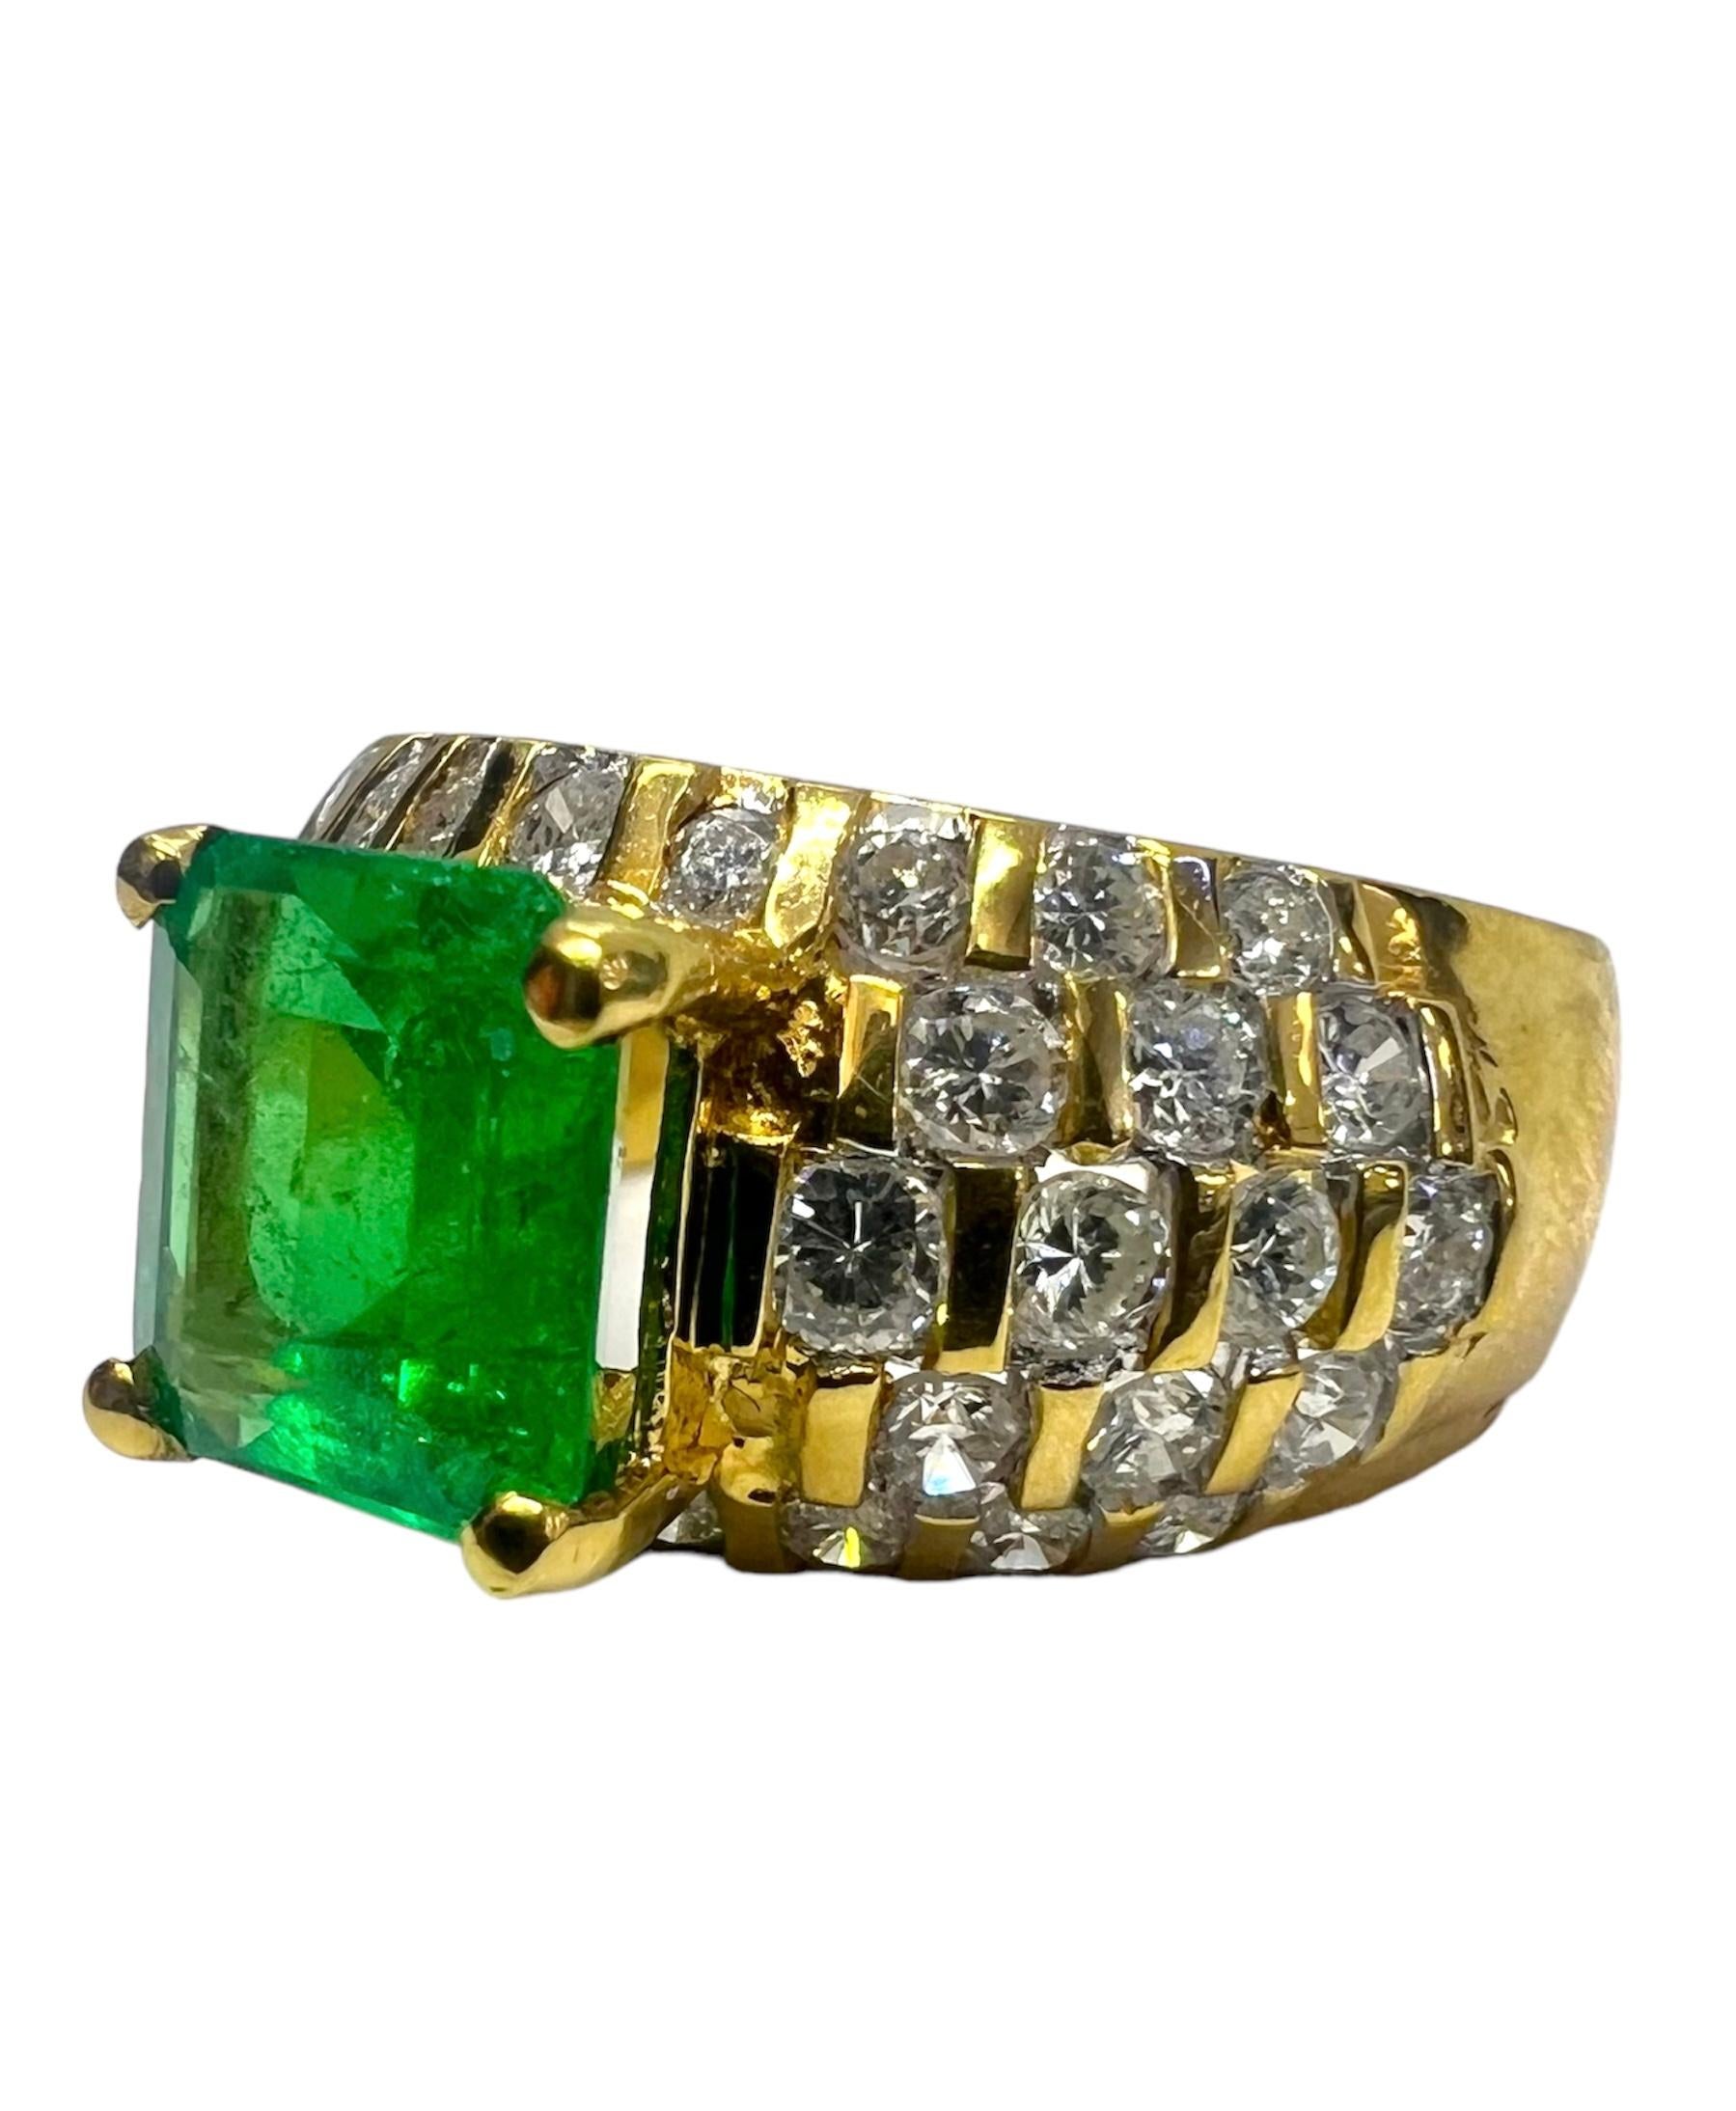 Ring aus 18 Karat Gelbgold mit Smaragd in der Mitte, der mit Diamanten verziert ist.

Sophia D von Joseph Dardashti LTD ist seit 35 Jahren weltweit bekannt und lässt sich vom klassischen Art-Déco-Design inspirieren, das mit modernen